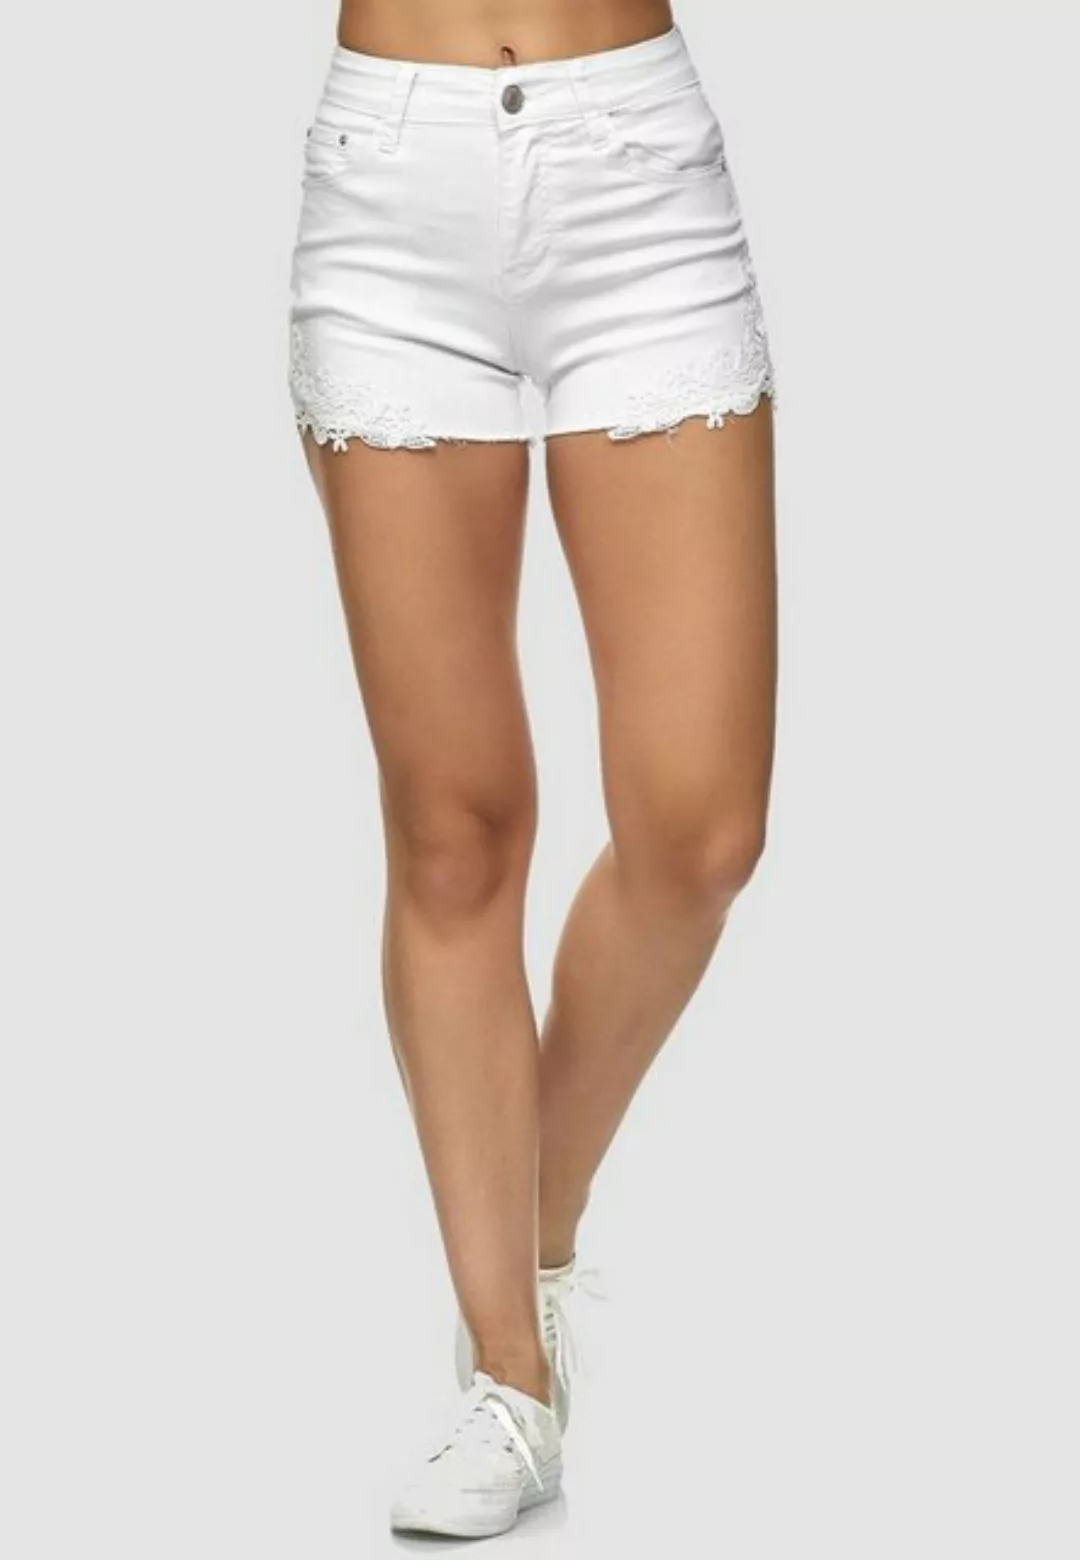 Egomaxx Jeansshorts Jeans Shorts Hose Kurz High Waist Hot Pants mit Spitze günstig online kaufen